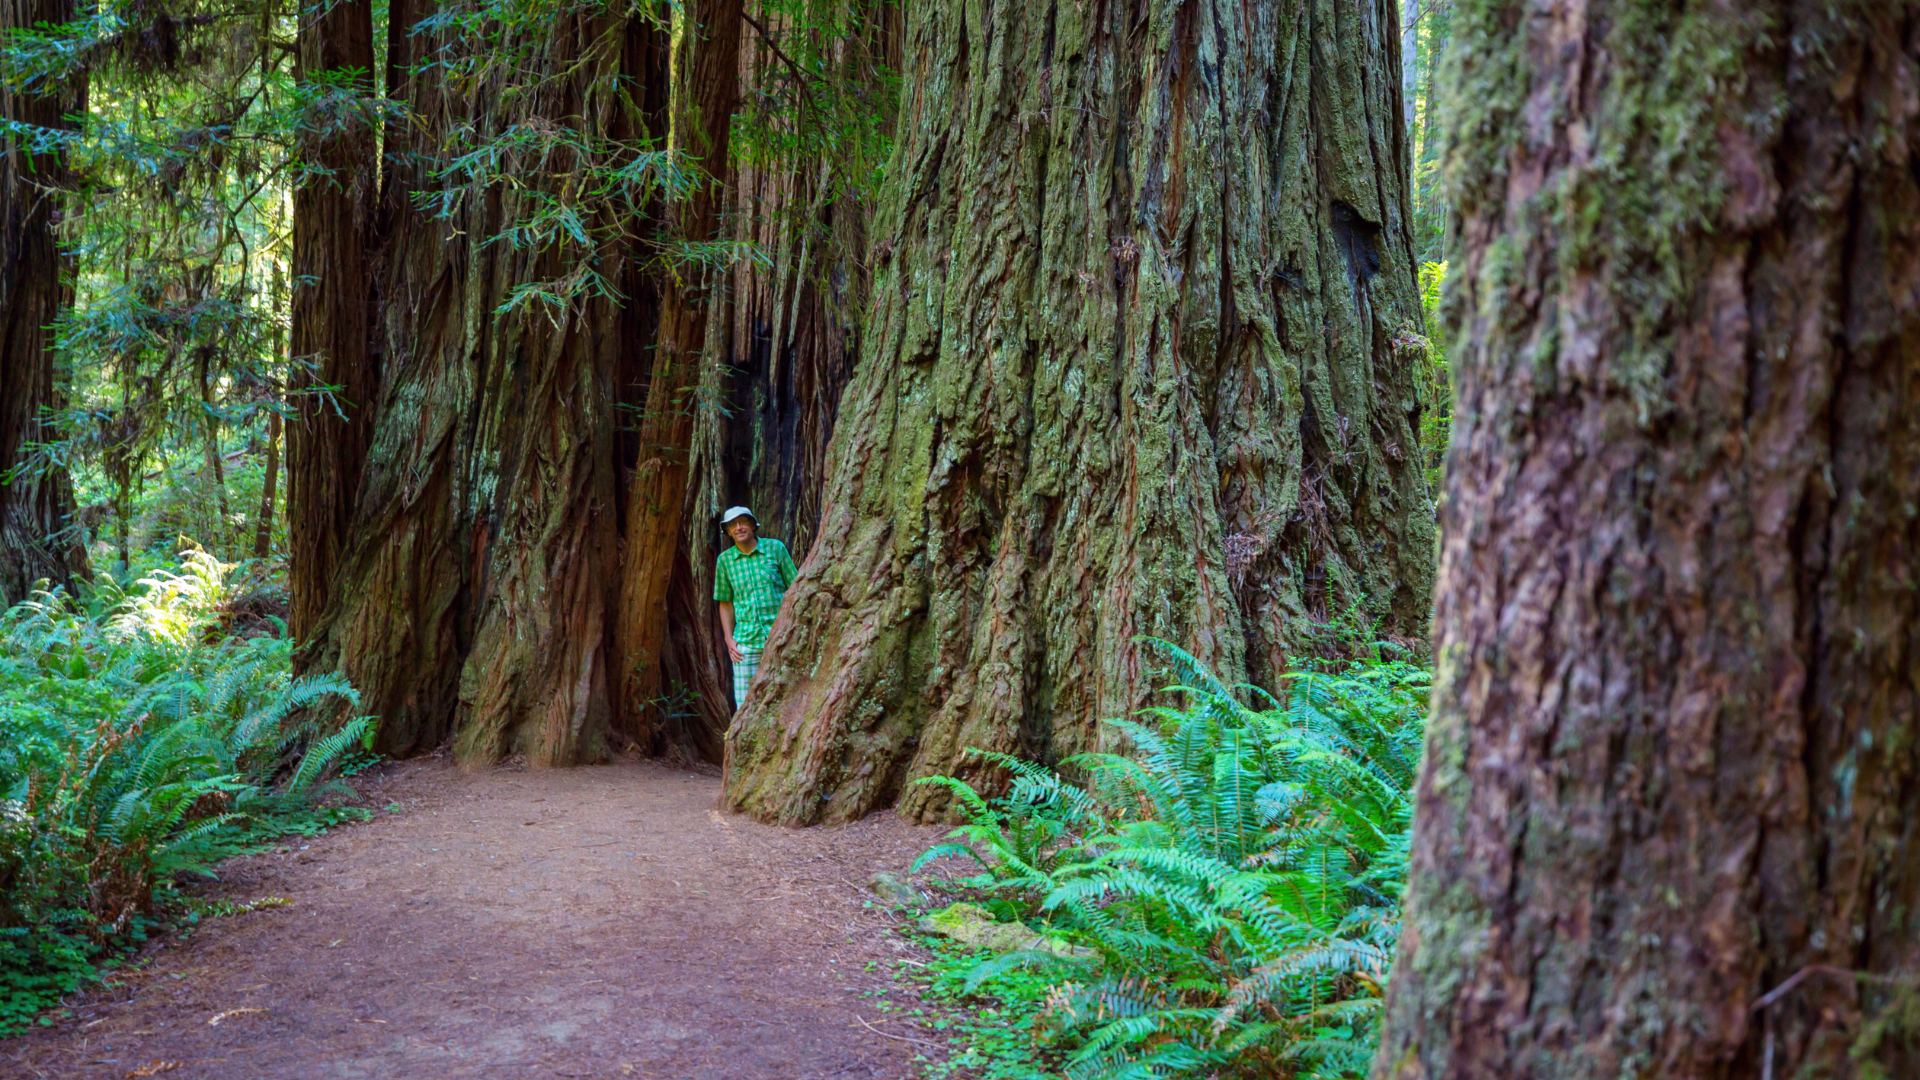 Western Red Cedar, botanisch als Thuja plicata bekannt, ist ein großer immergrüner Baum, der in Nordamerika beheimatet ist. Hier sind einige detaillierte Informationen zu Western Red Cedar: